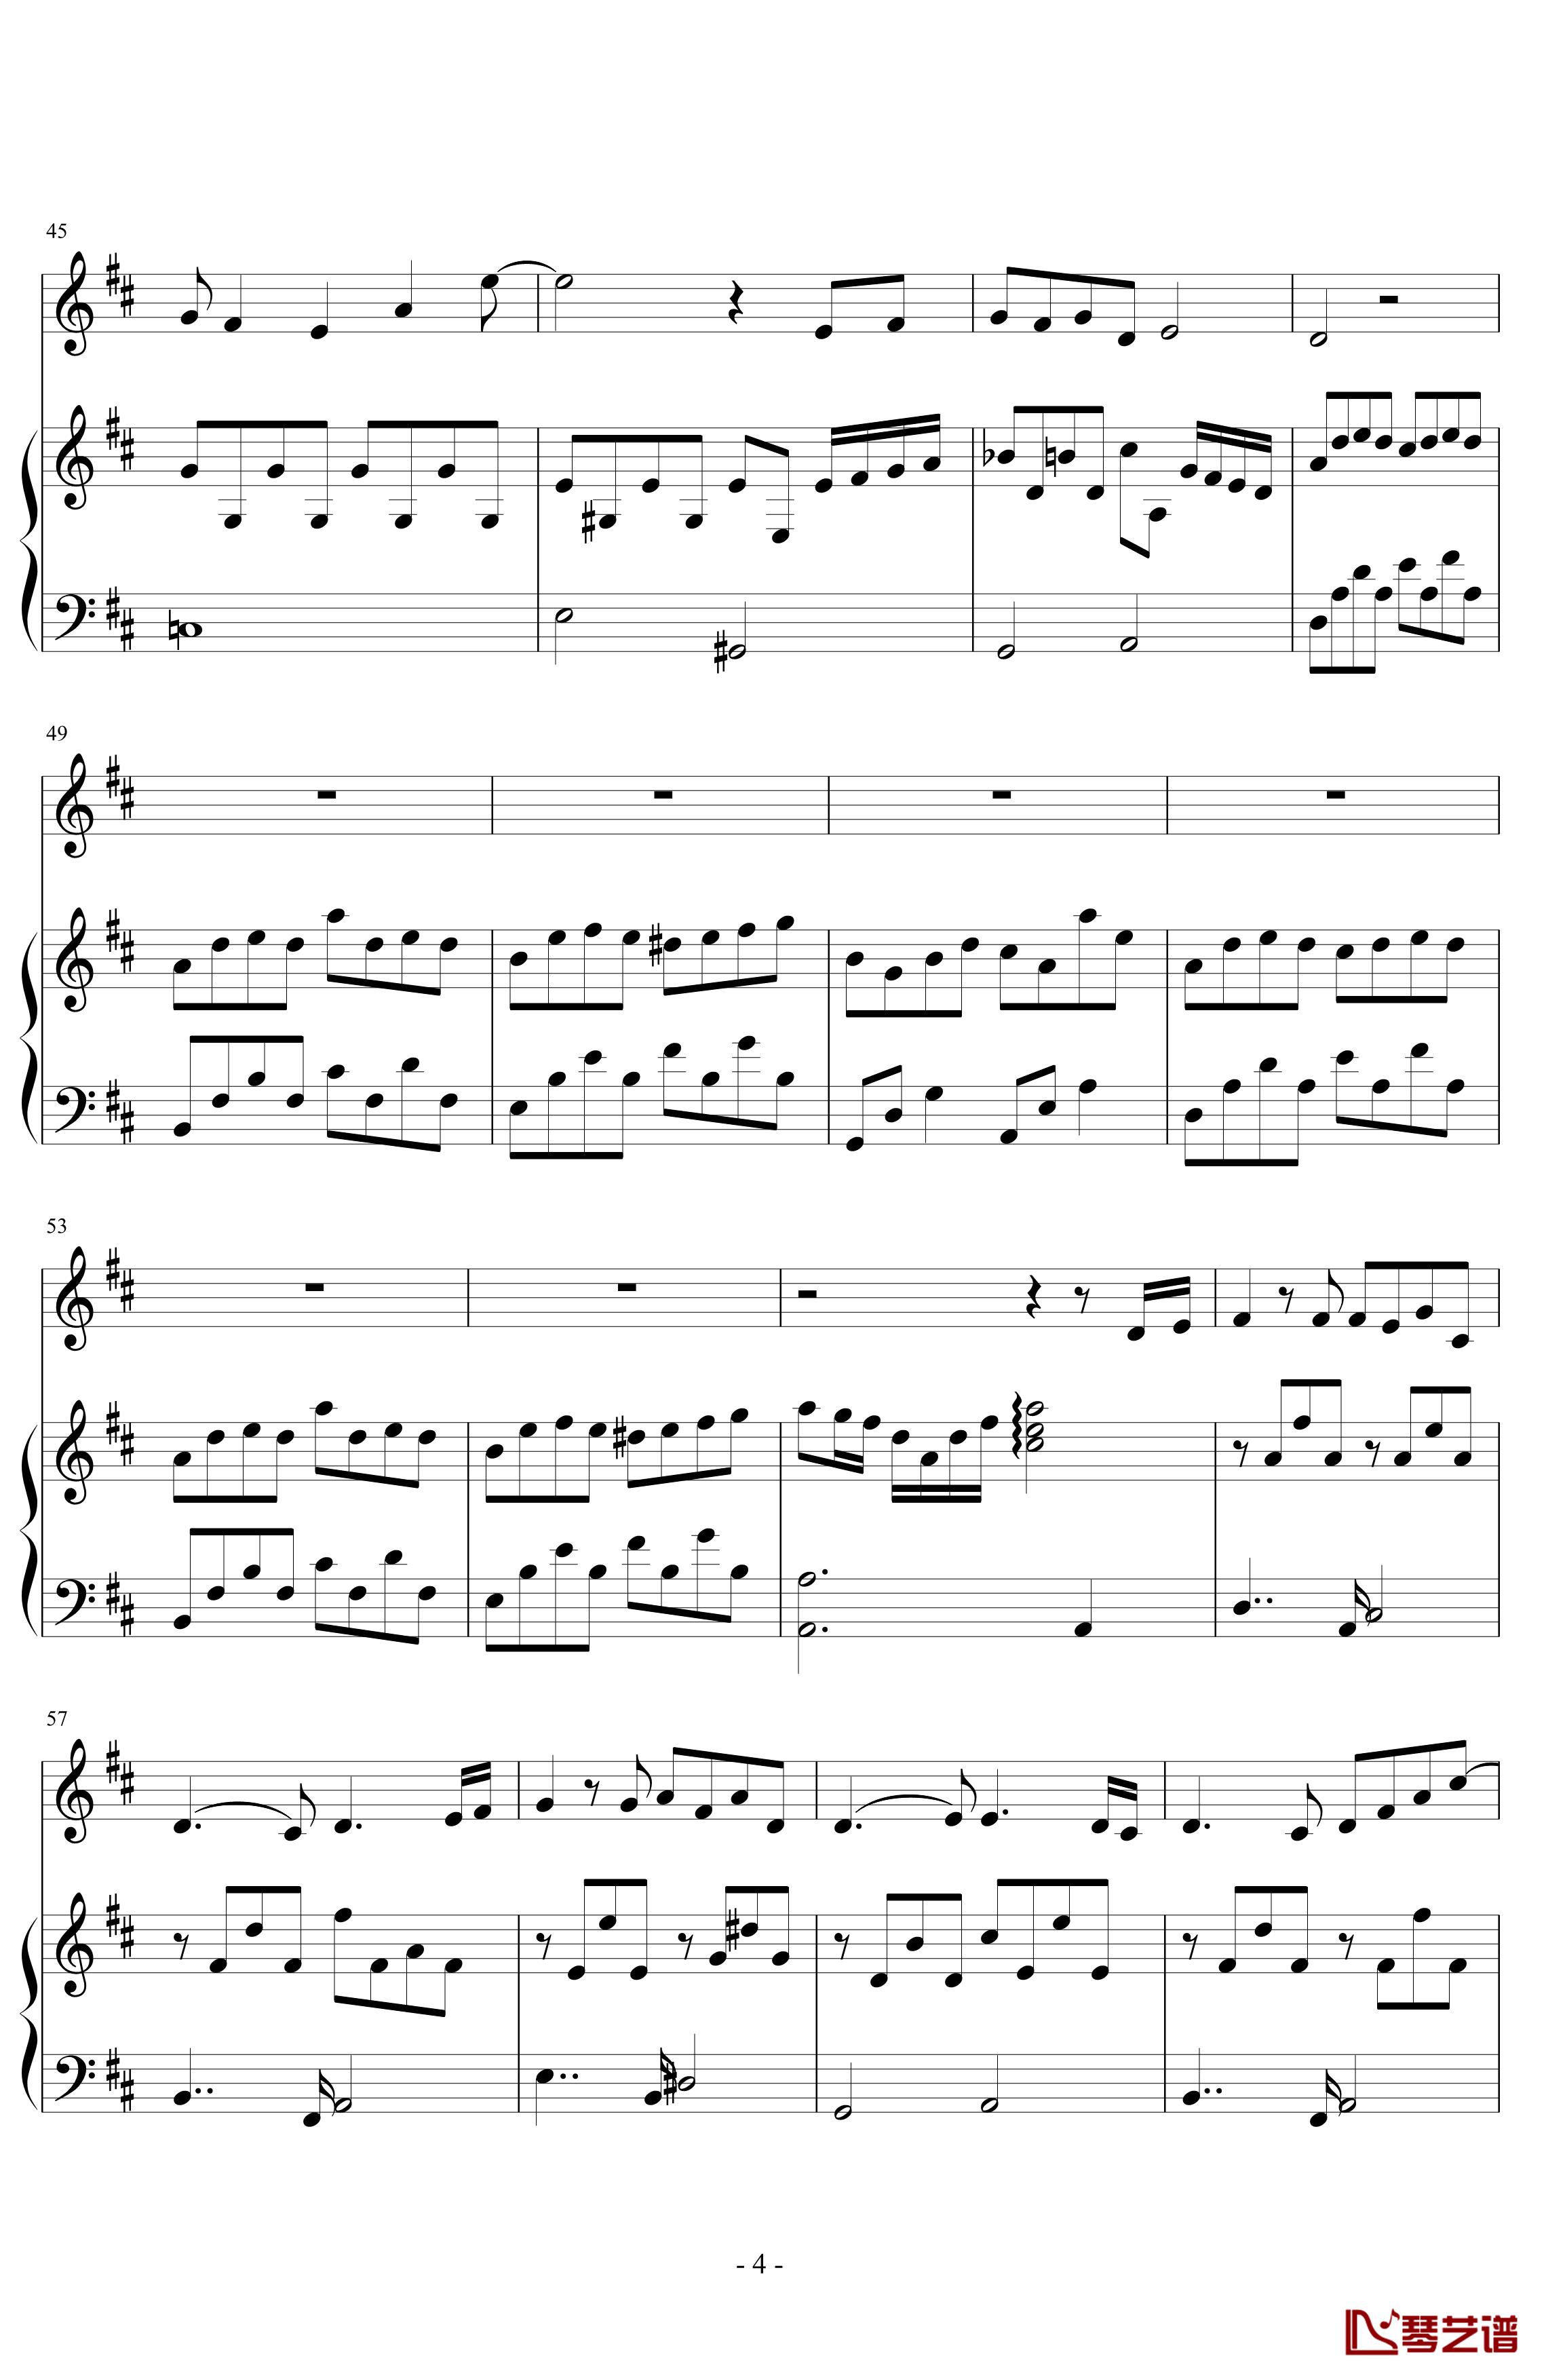 三年级二班钢琴谱-潇洒星空4